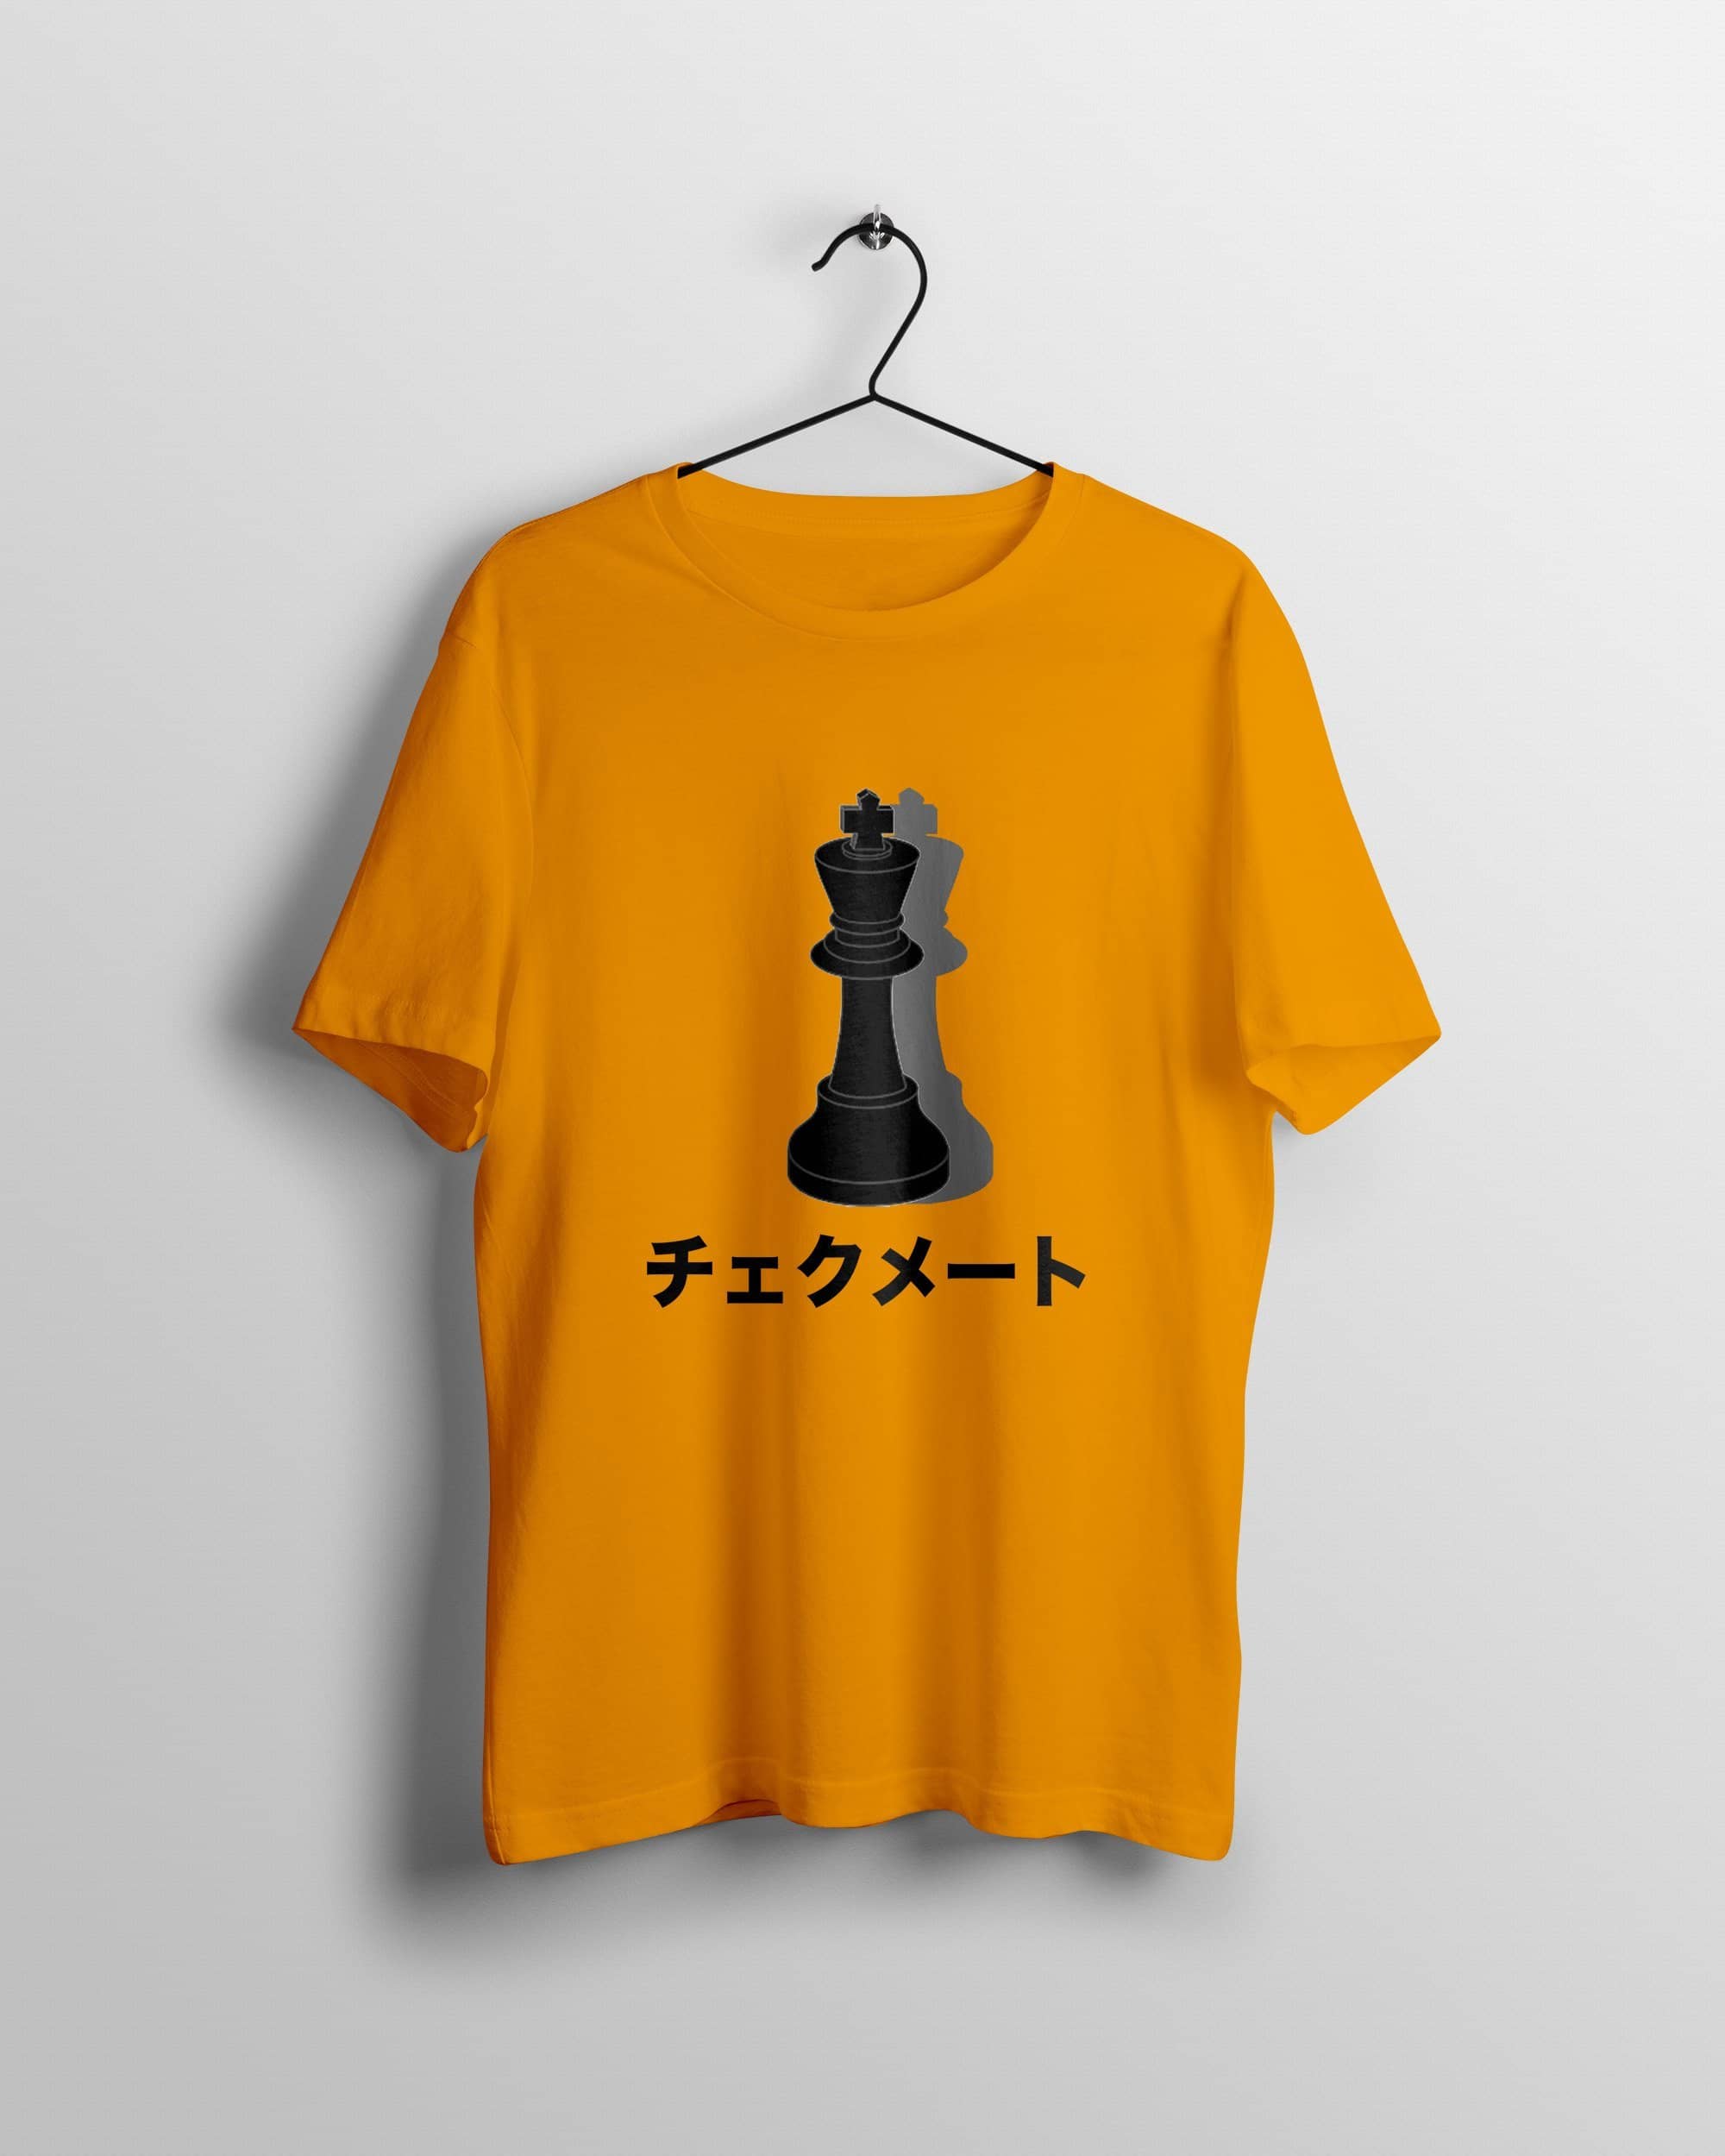 Japanese Chess T Shirt Imouri